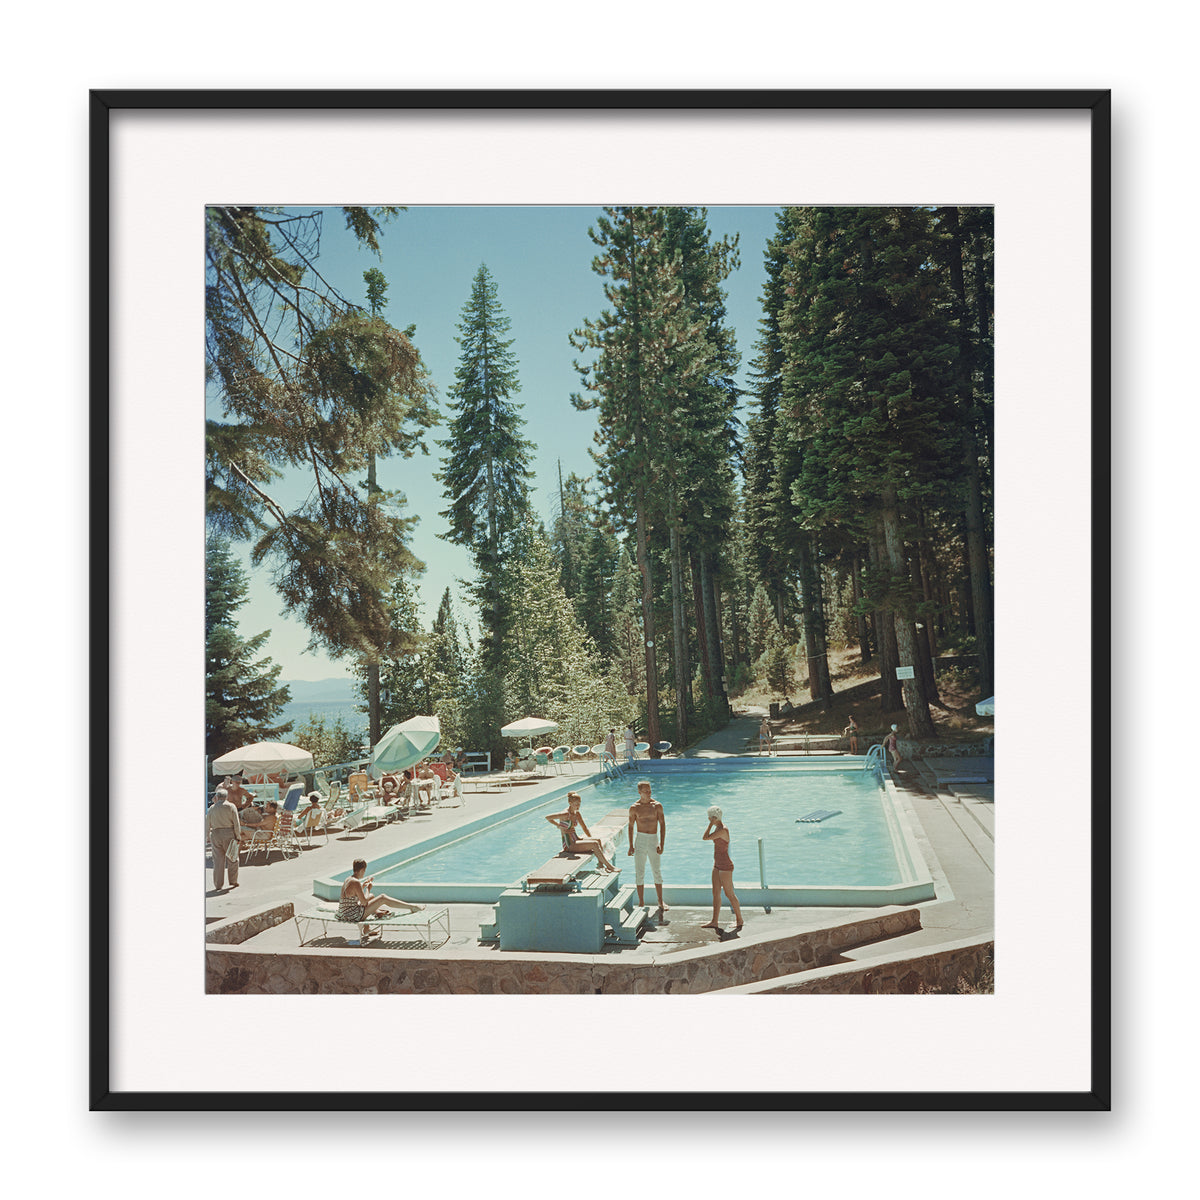 Pool At Lake Tahoe